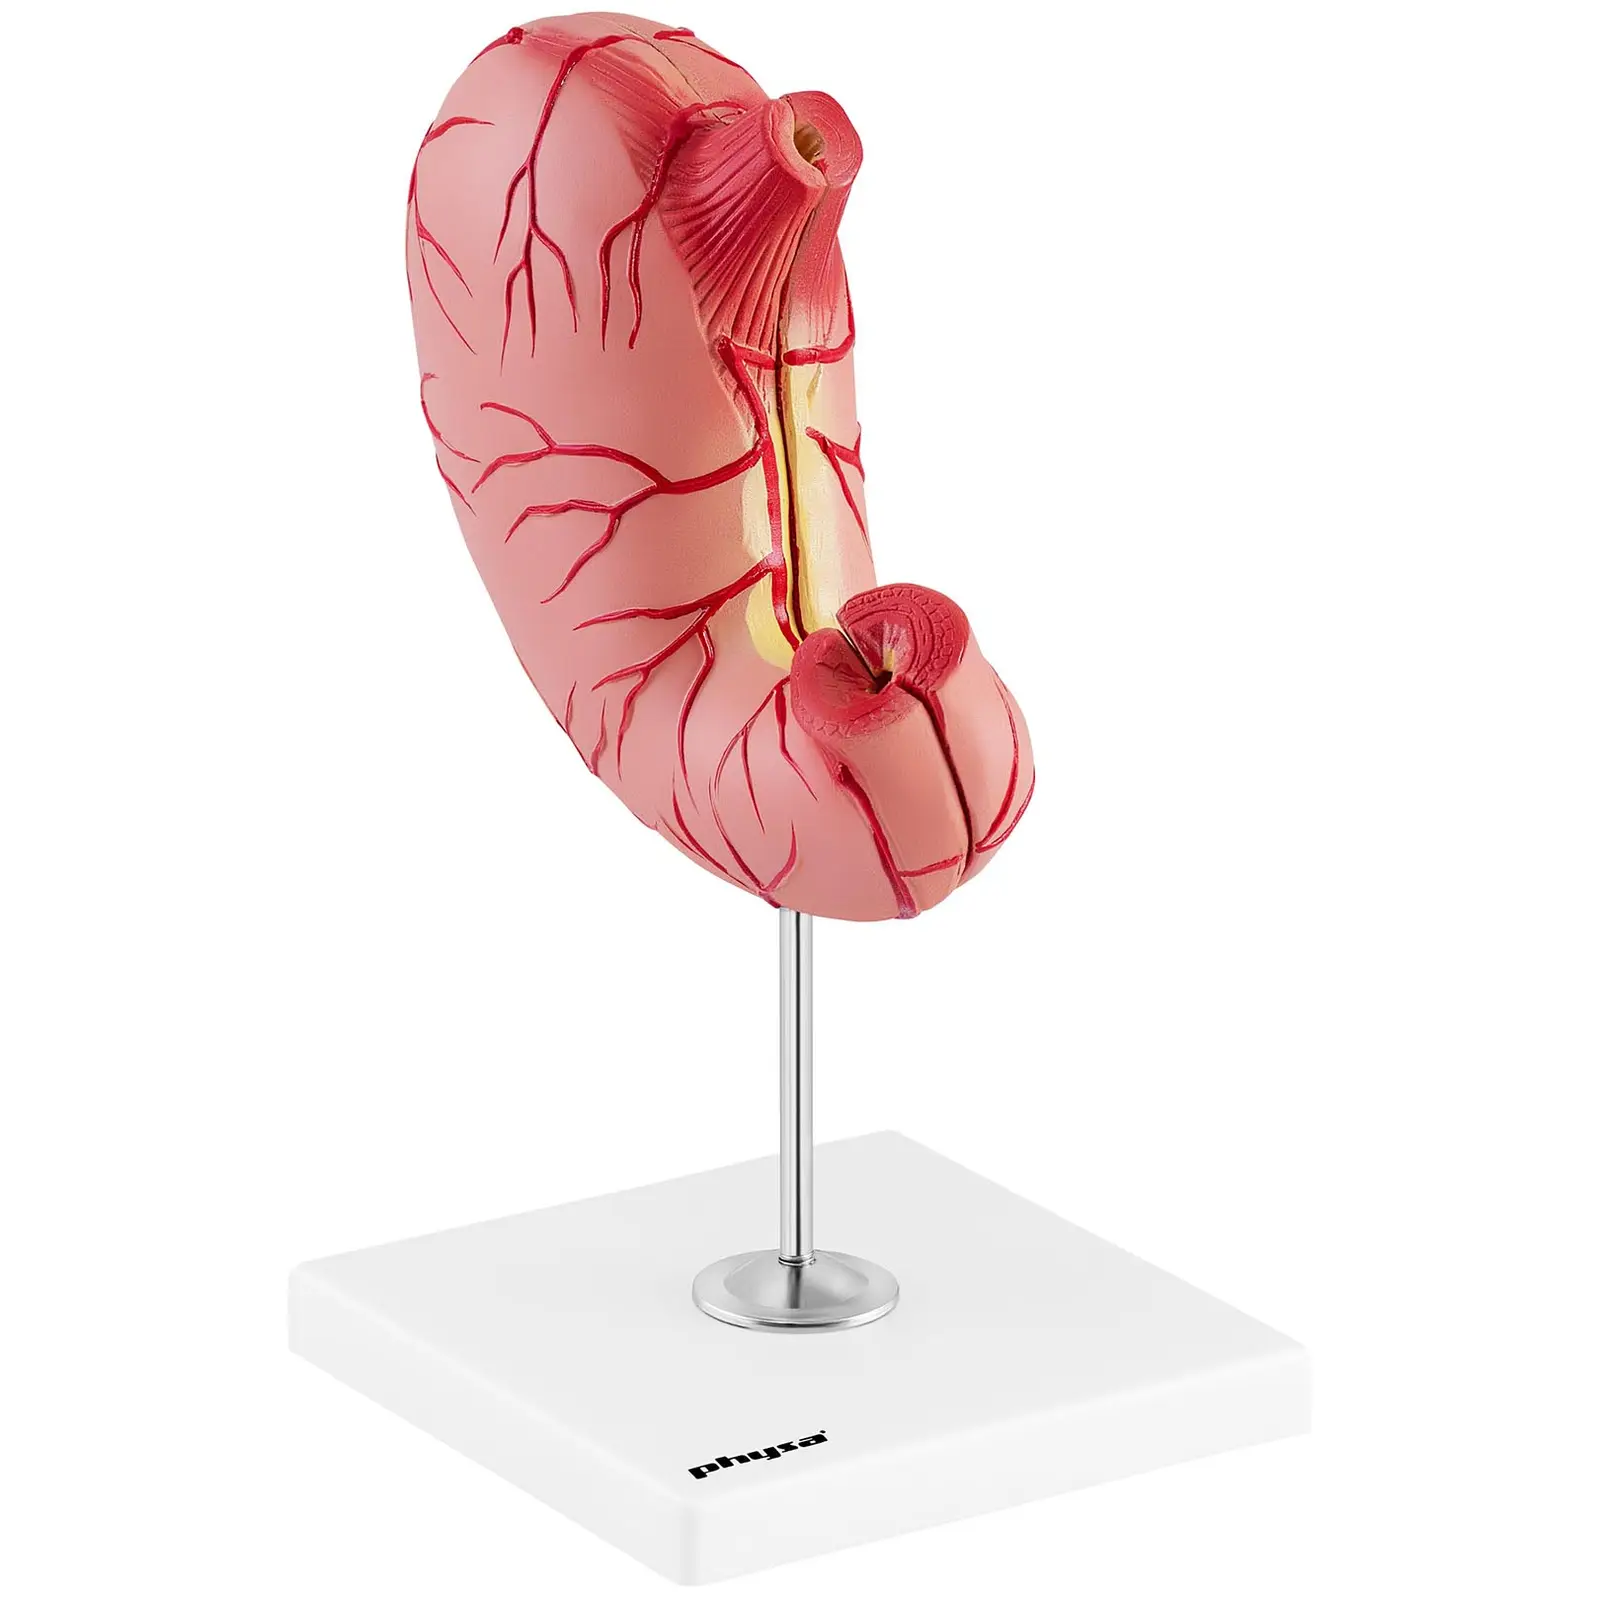 Modelo anatómico de estómago - desmontable en 2 piezas - tamaño original